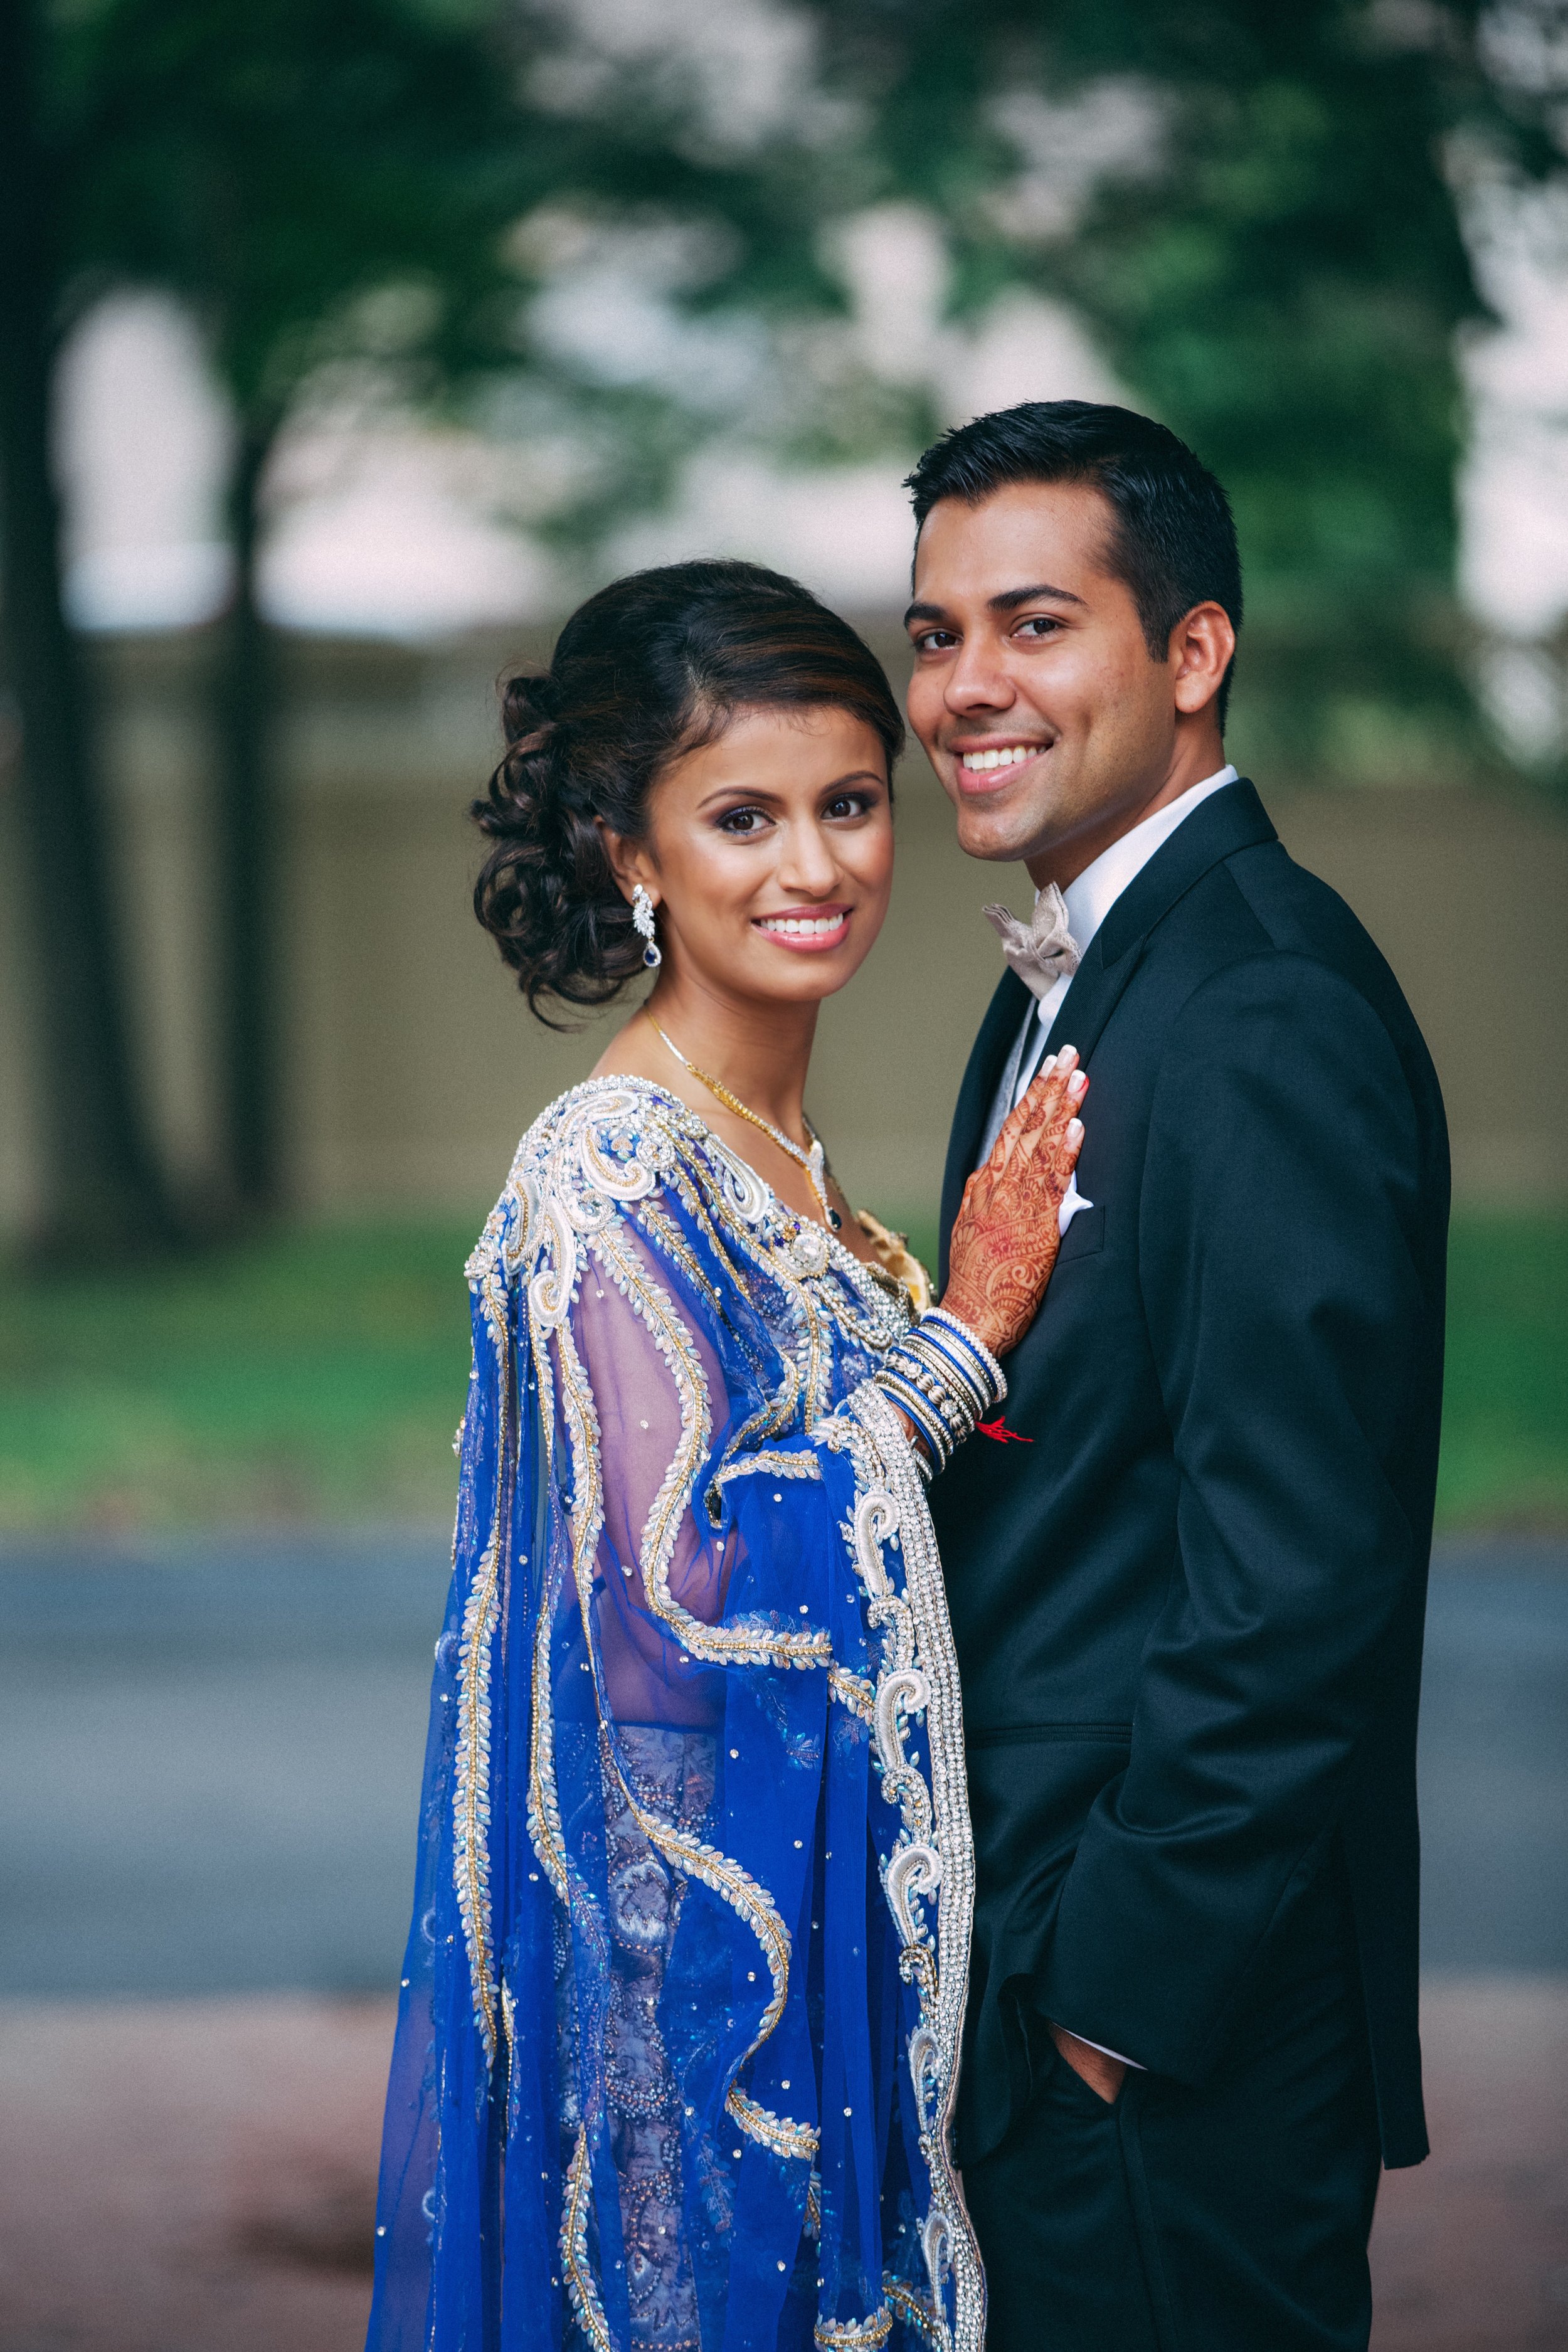 Le Cape Weddings - Prapti and Harsh Sneak Peek Indian Wedding  4.jpg